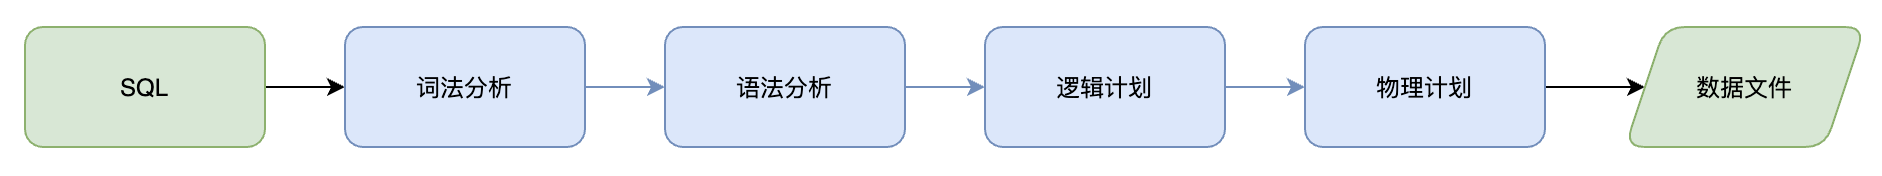 SQL 抽象语法树及改写场景应用